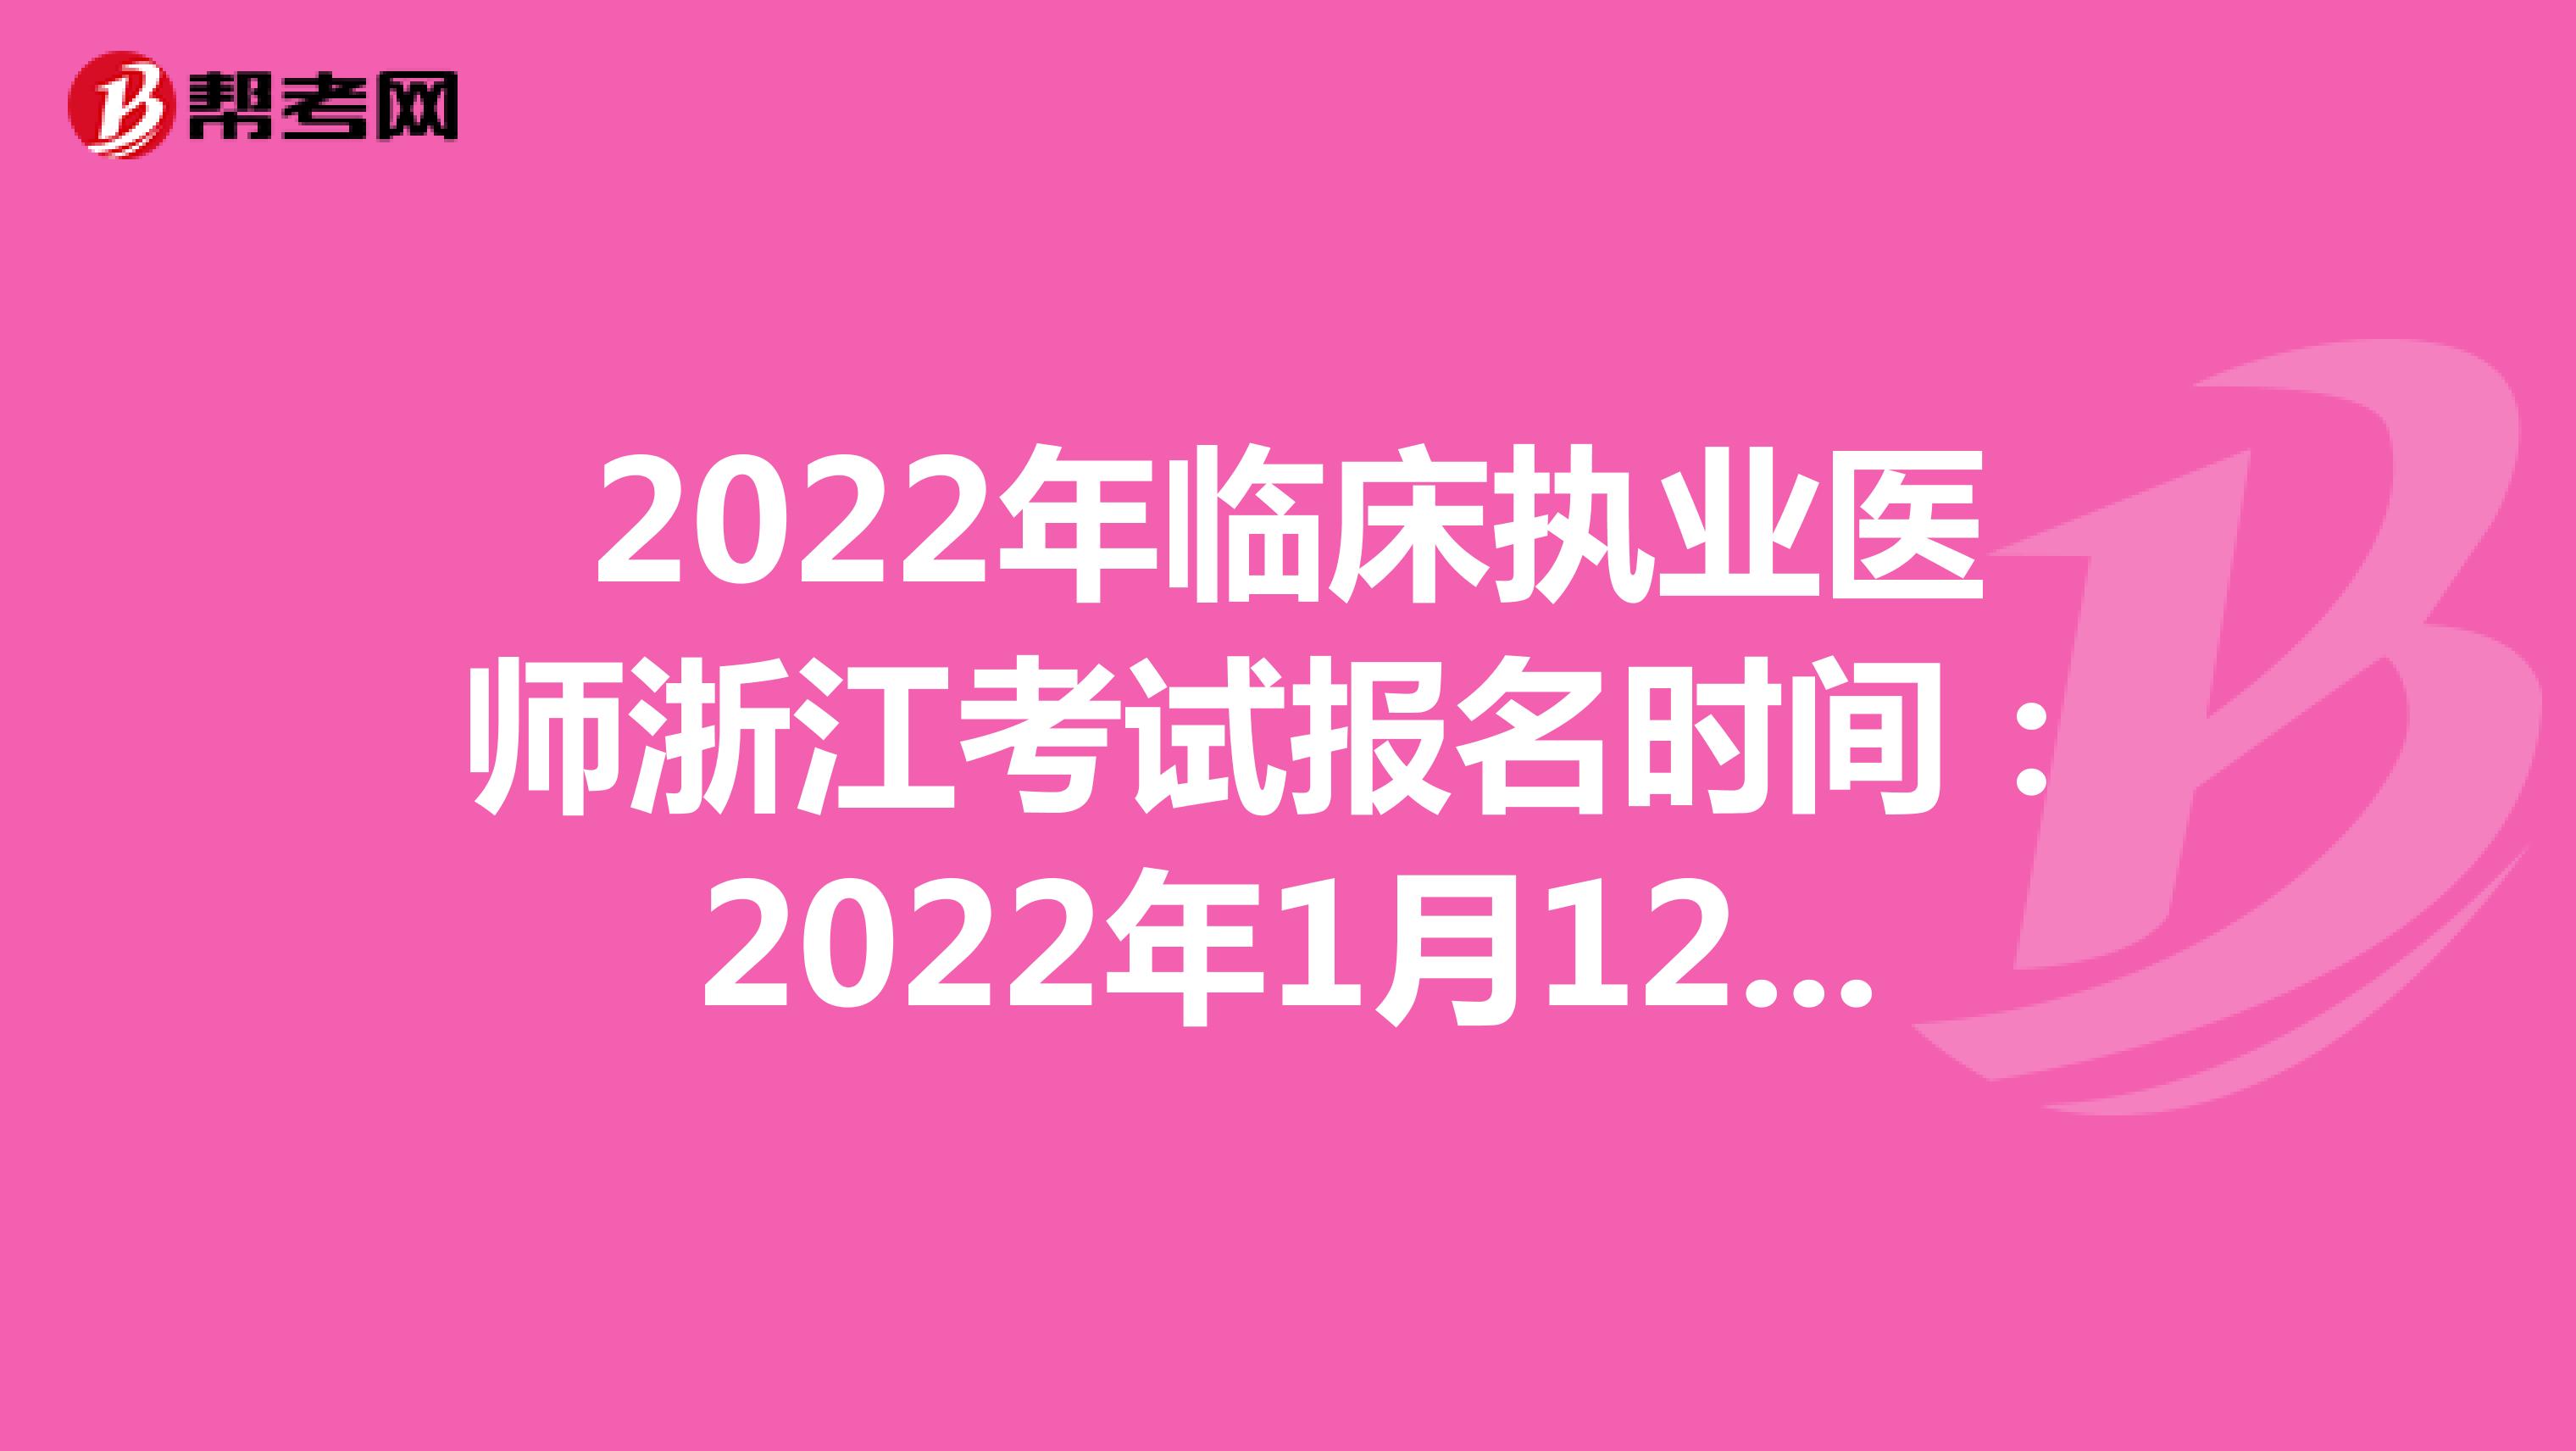 2022年临床执业医师浙江考试报名时间：2022年1月12日至1月25日